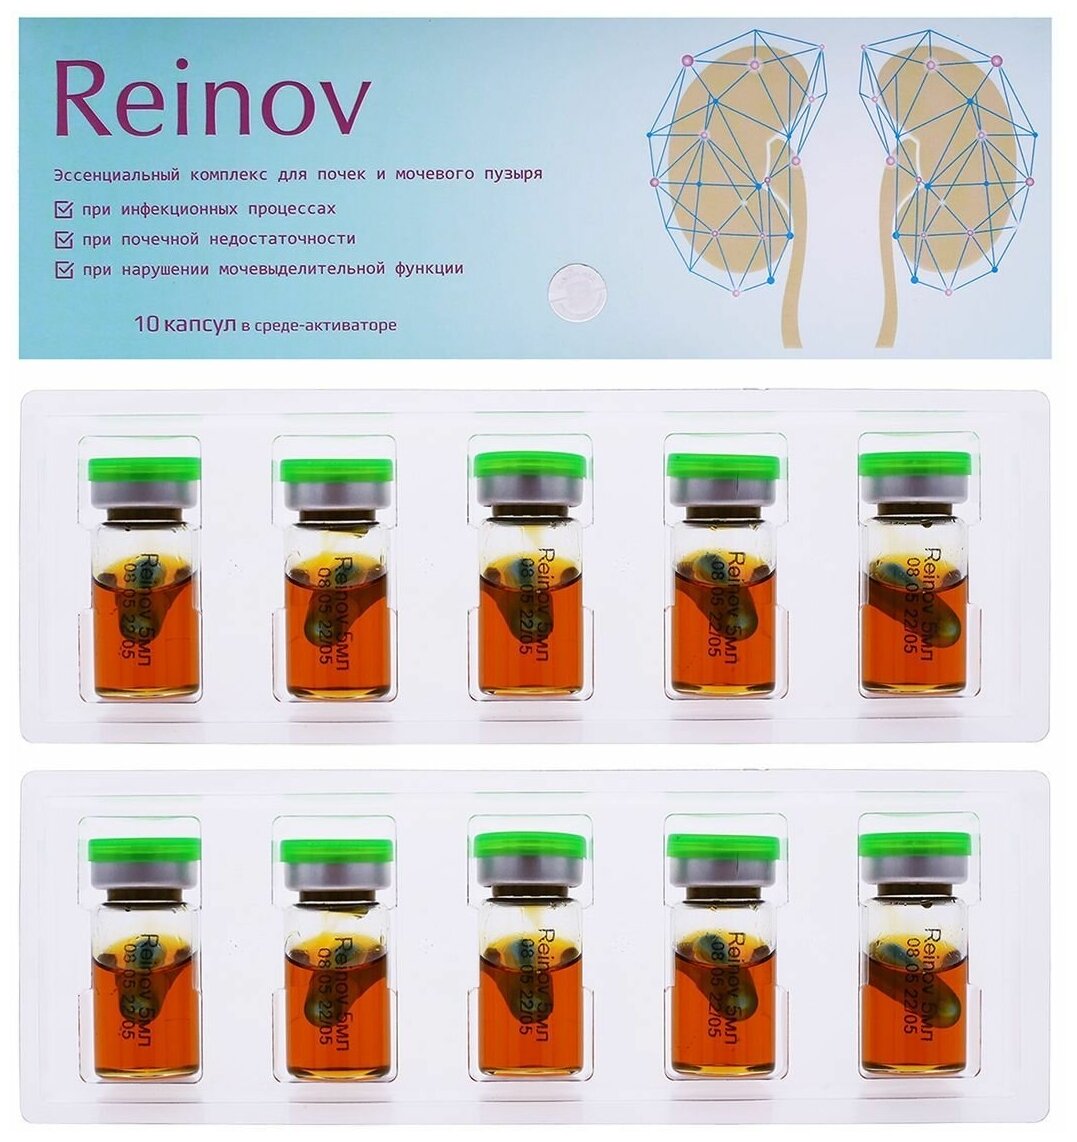 Reinov KapsОila (Реинов Капсойла) - комплекс для почек и мочевого пузыря 10 капсул. При почечной недостаточности мочекаменной болезни. Сашера-МЕД.